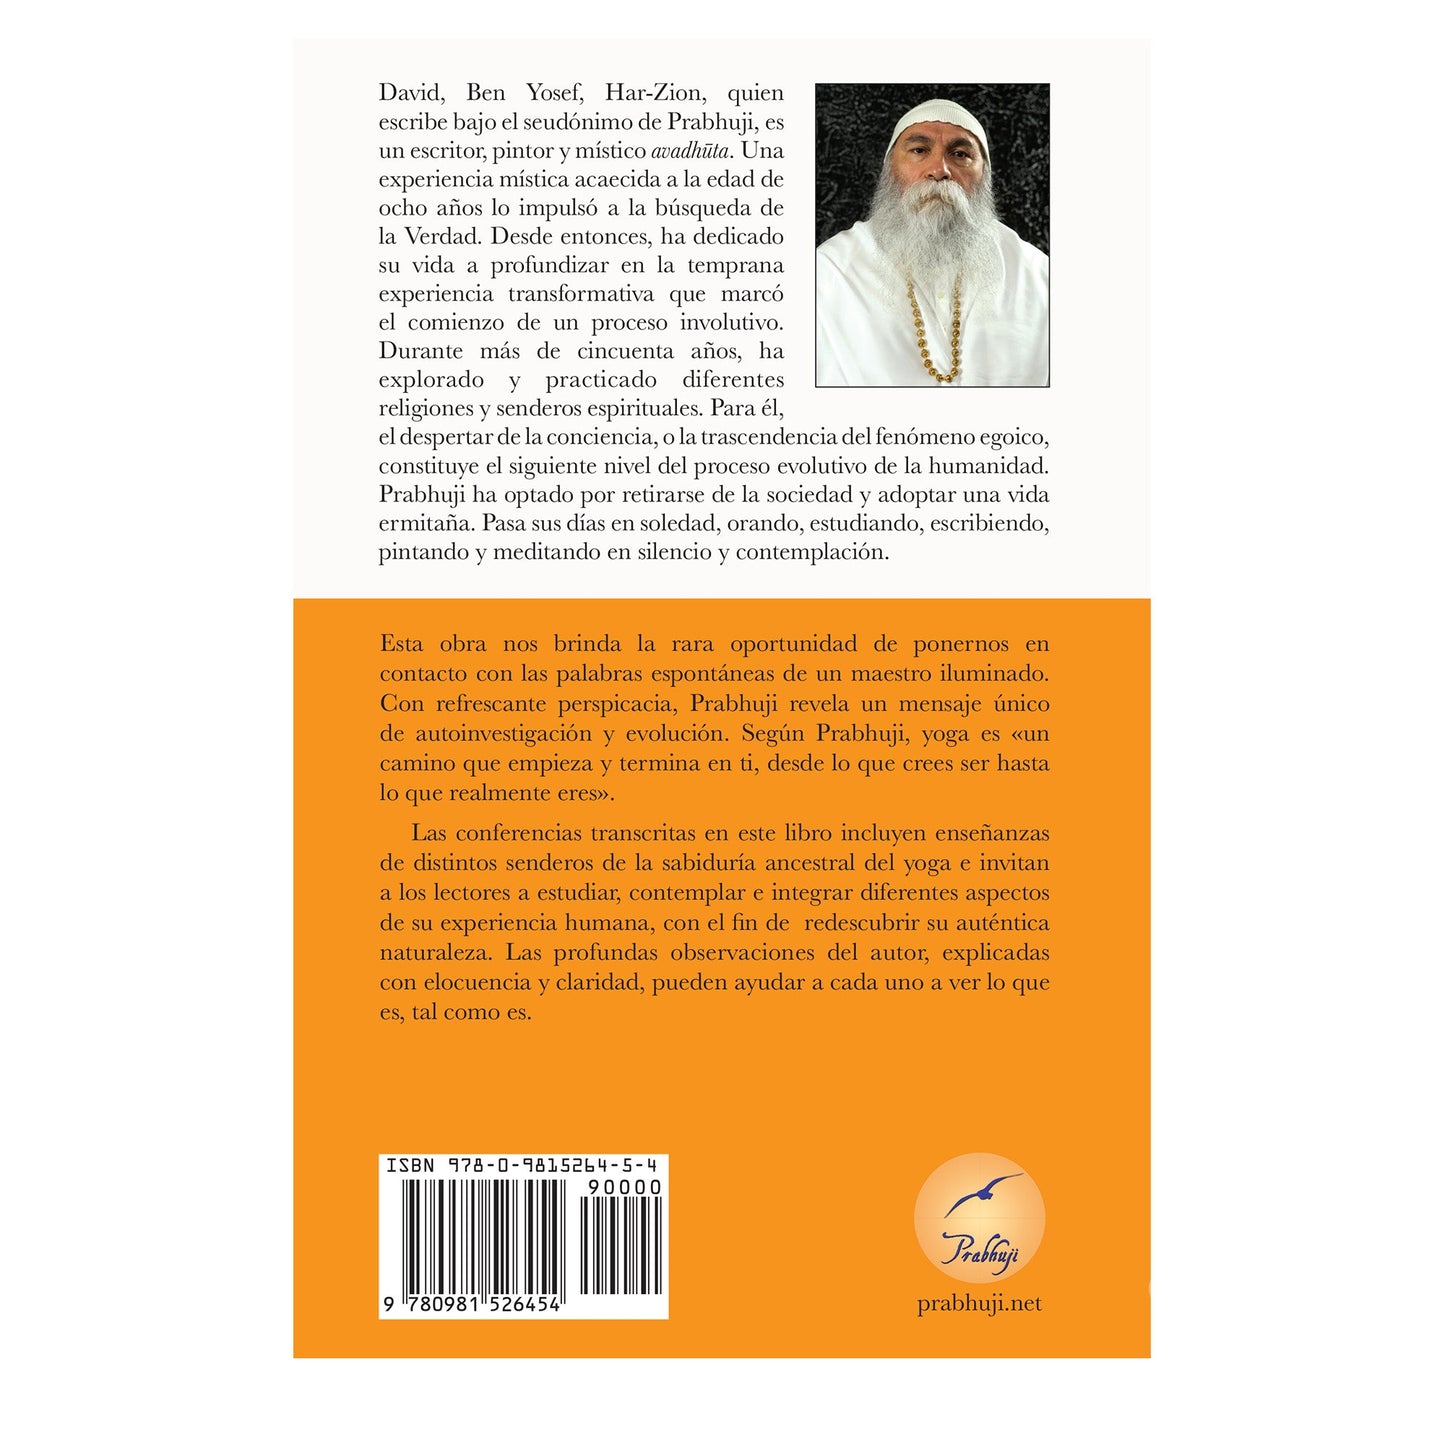 Book Lo que es, tal como es: Satsangs con Prabhuji (Hard cover - Spanish)